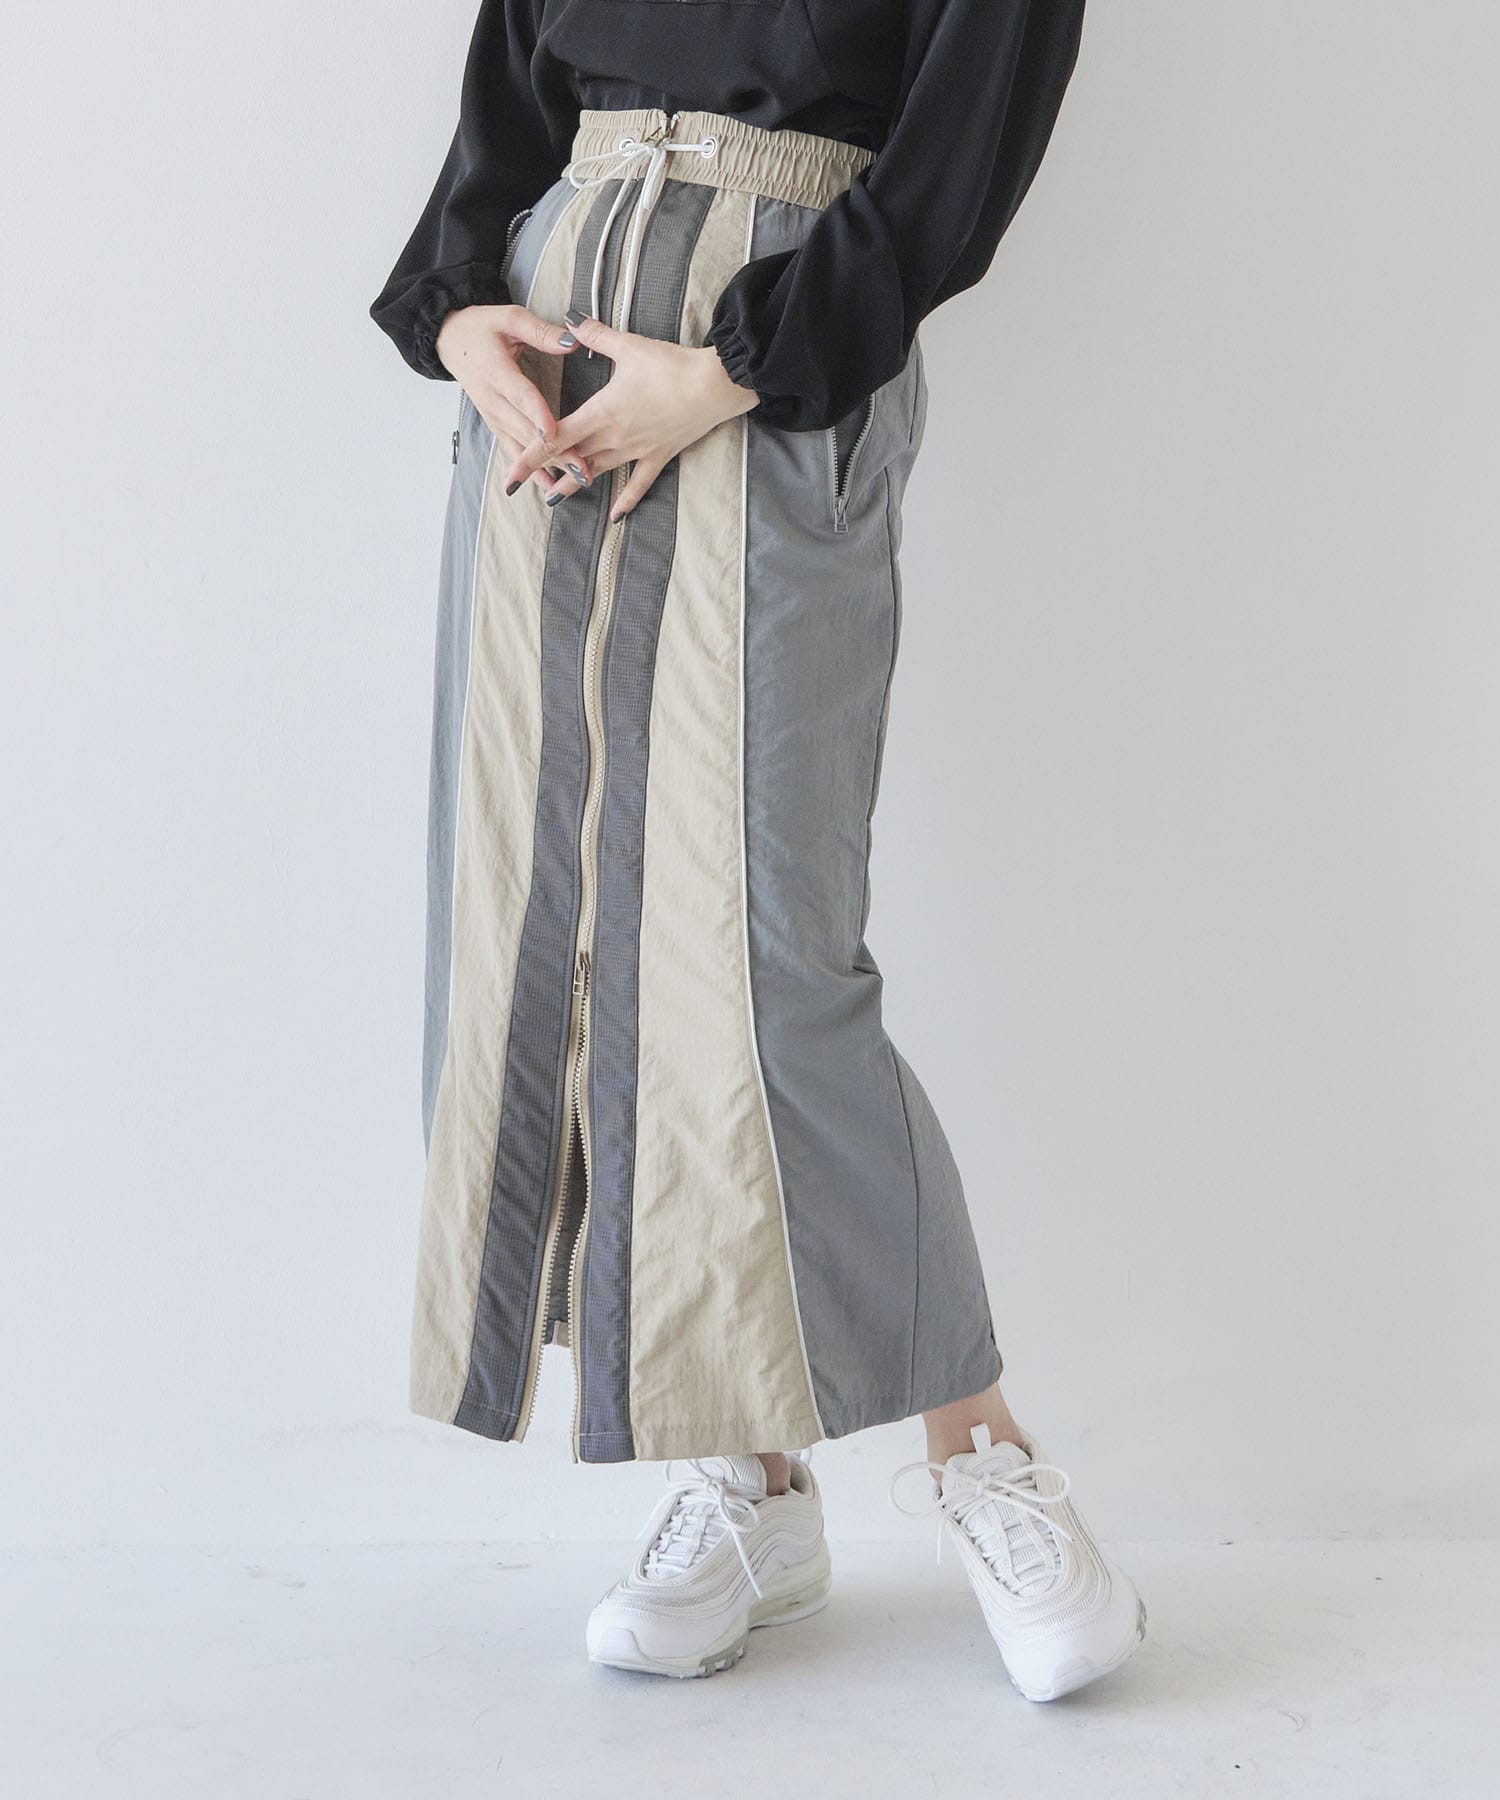 A+TOKYO スカートの商品ページ